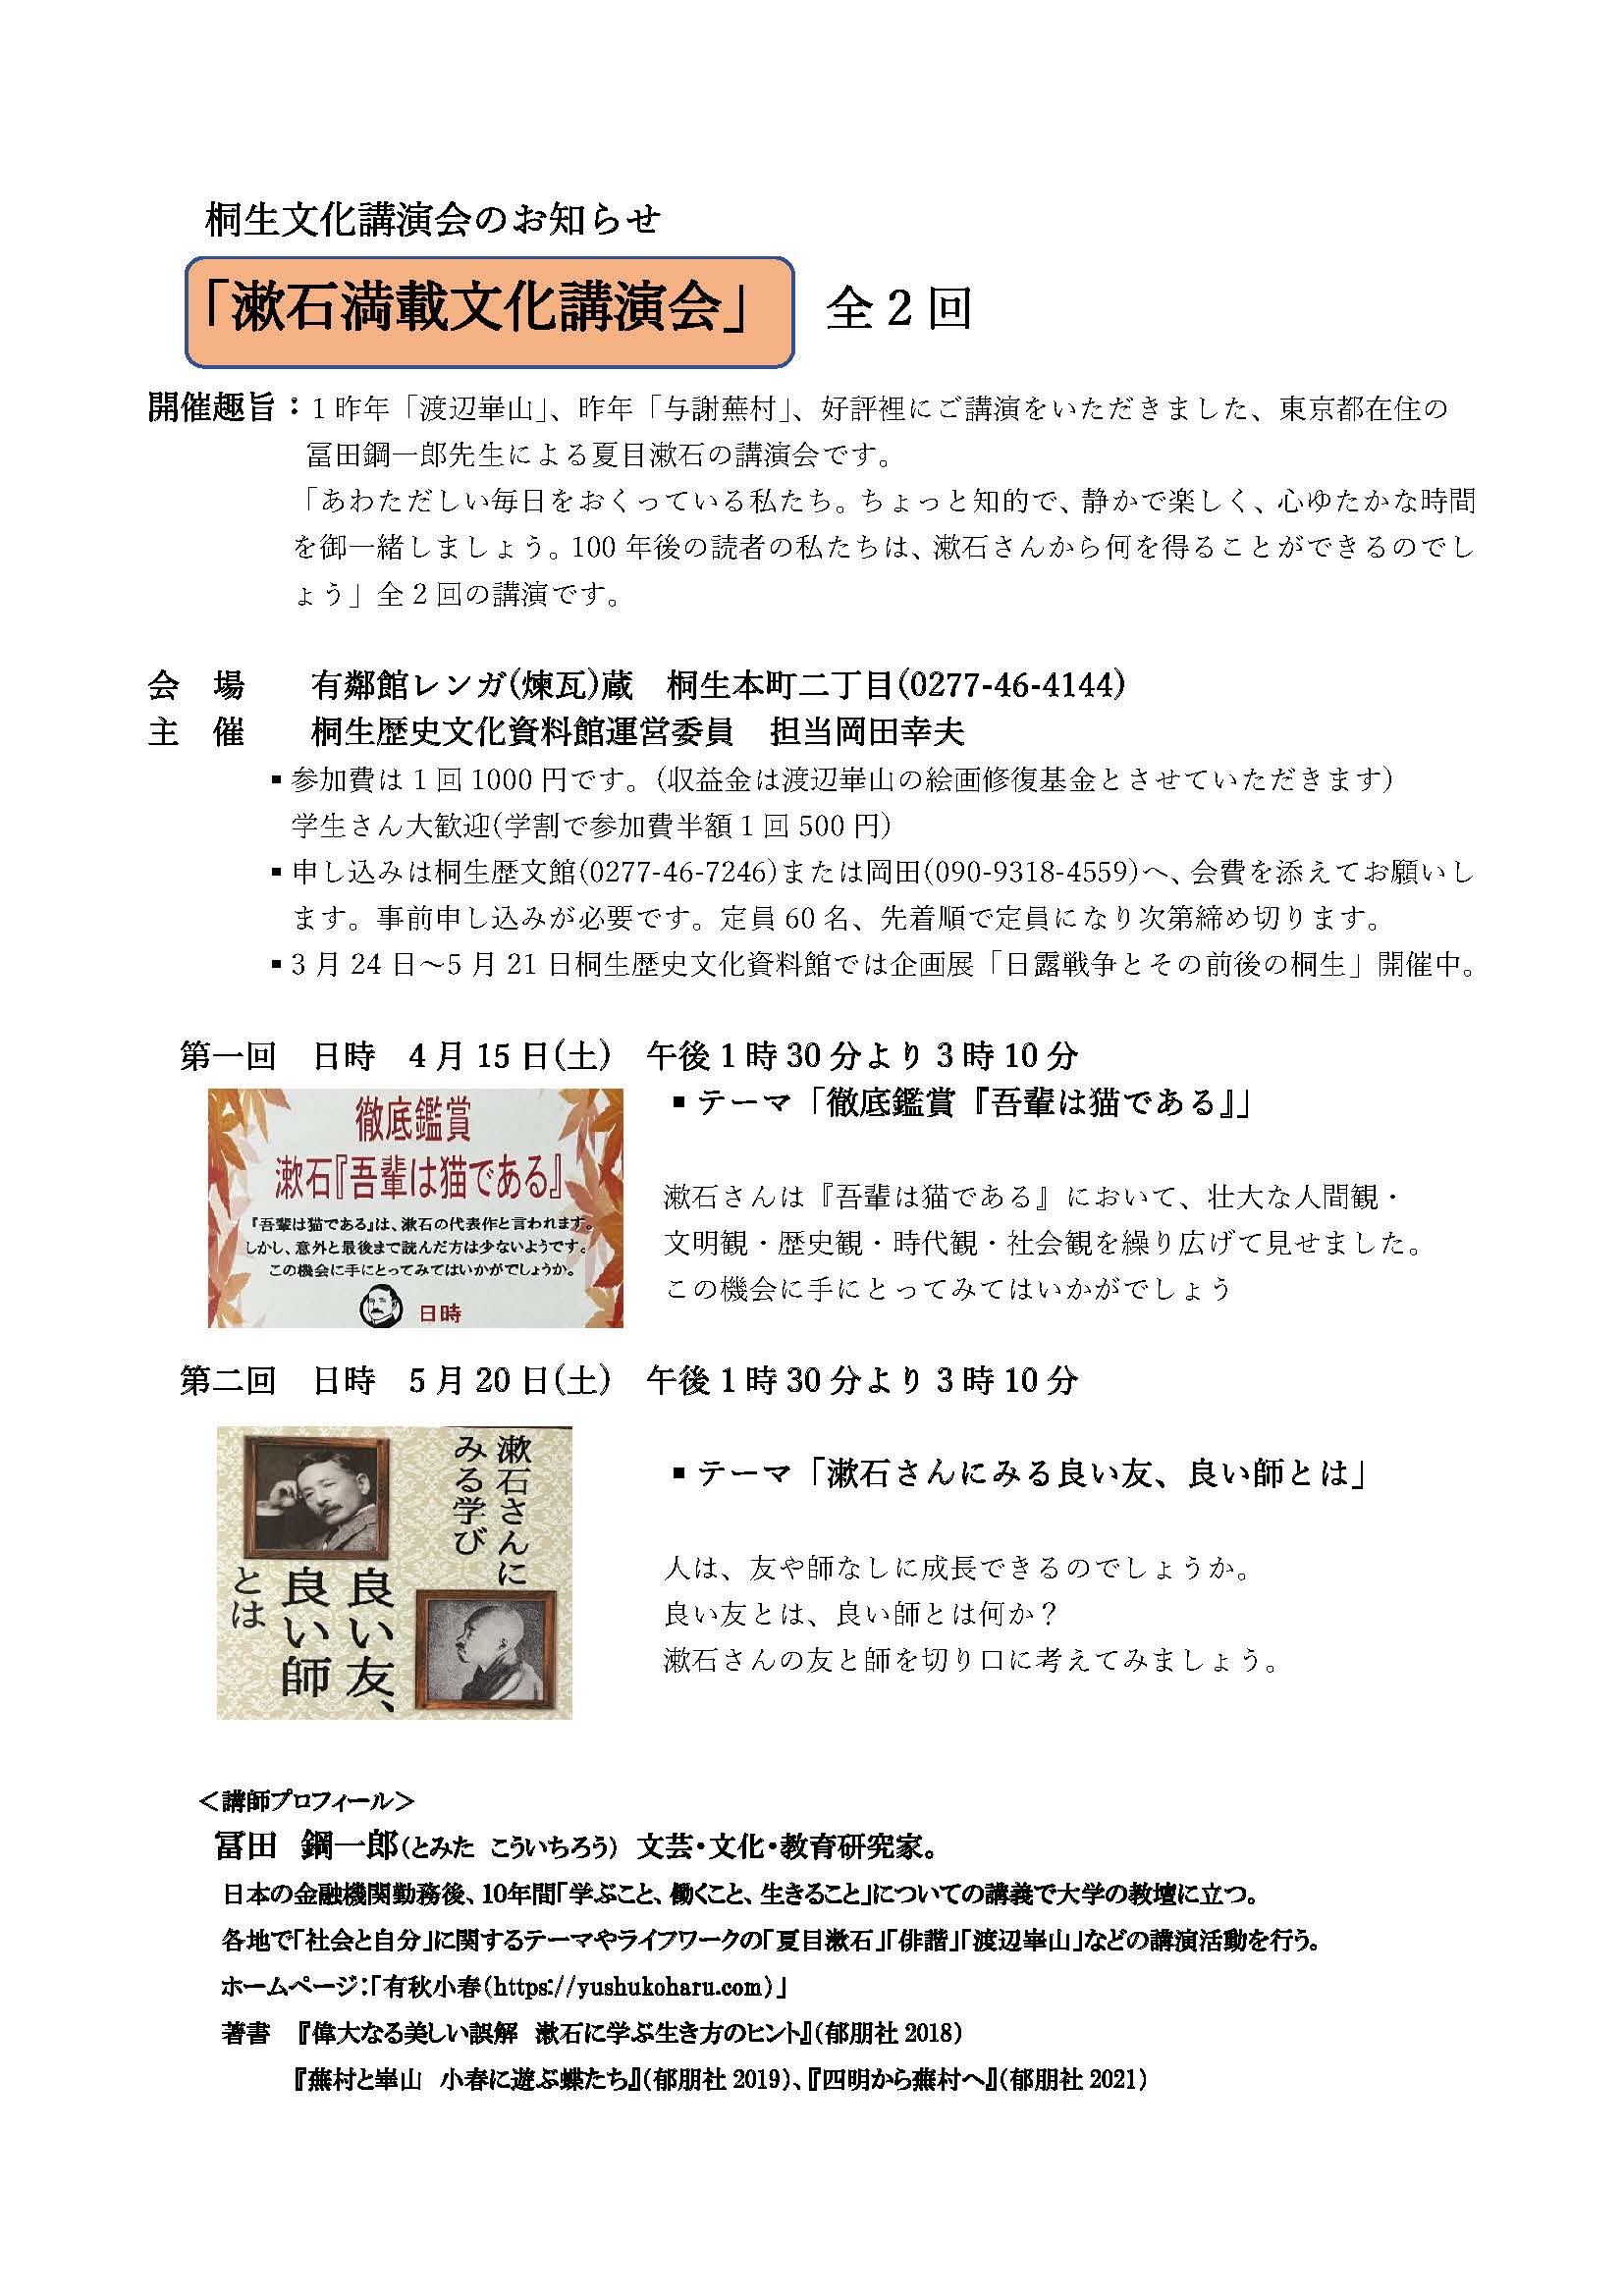 桐生市で漱石文化講演会(二回シリーズ)のお知らせ